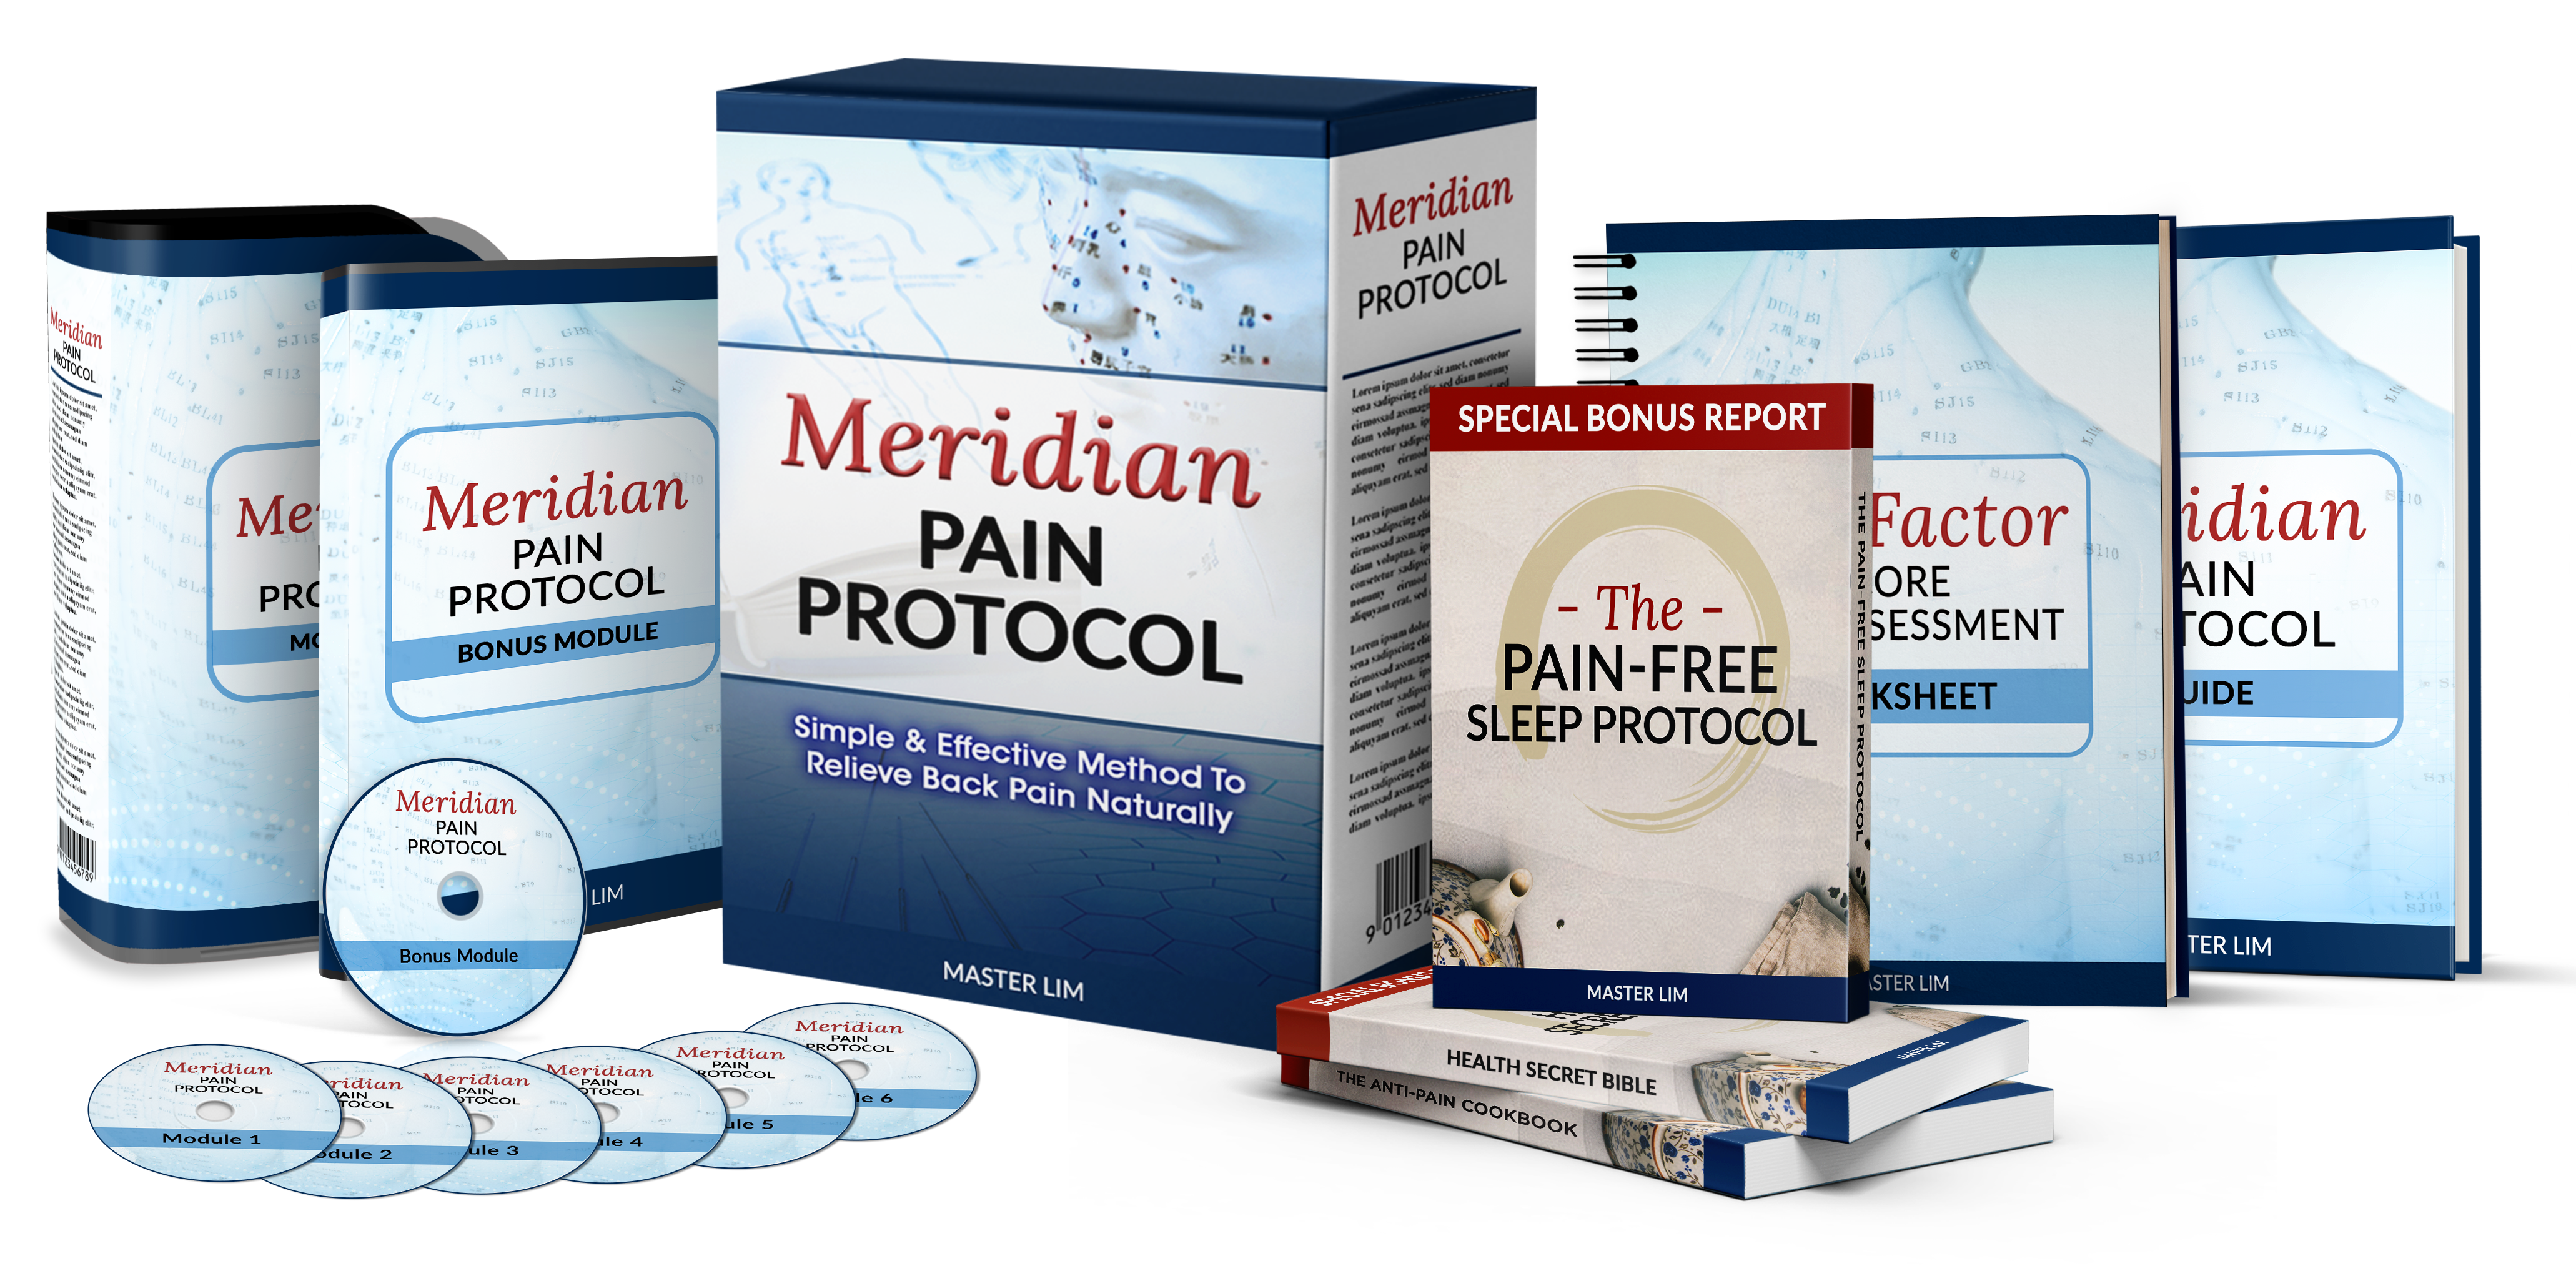 Meridian Pain Protocol Reviews